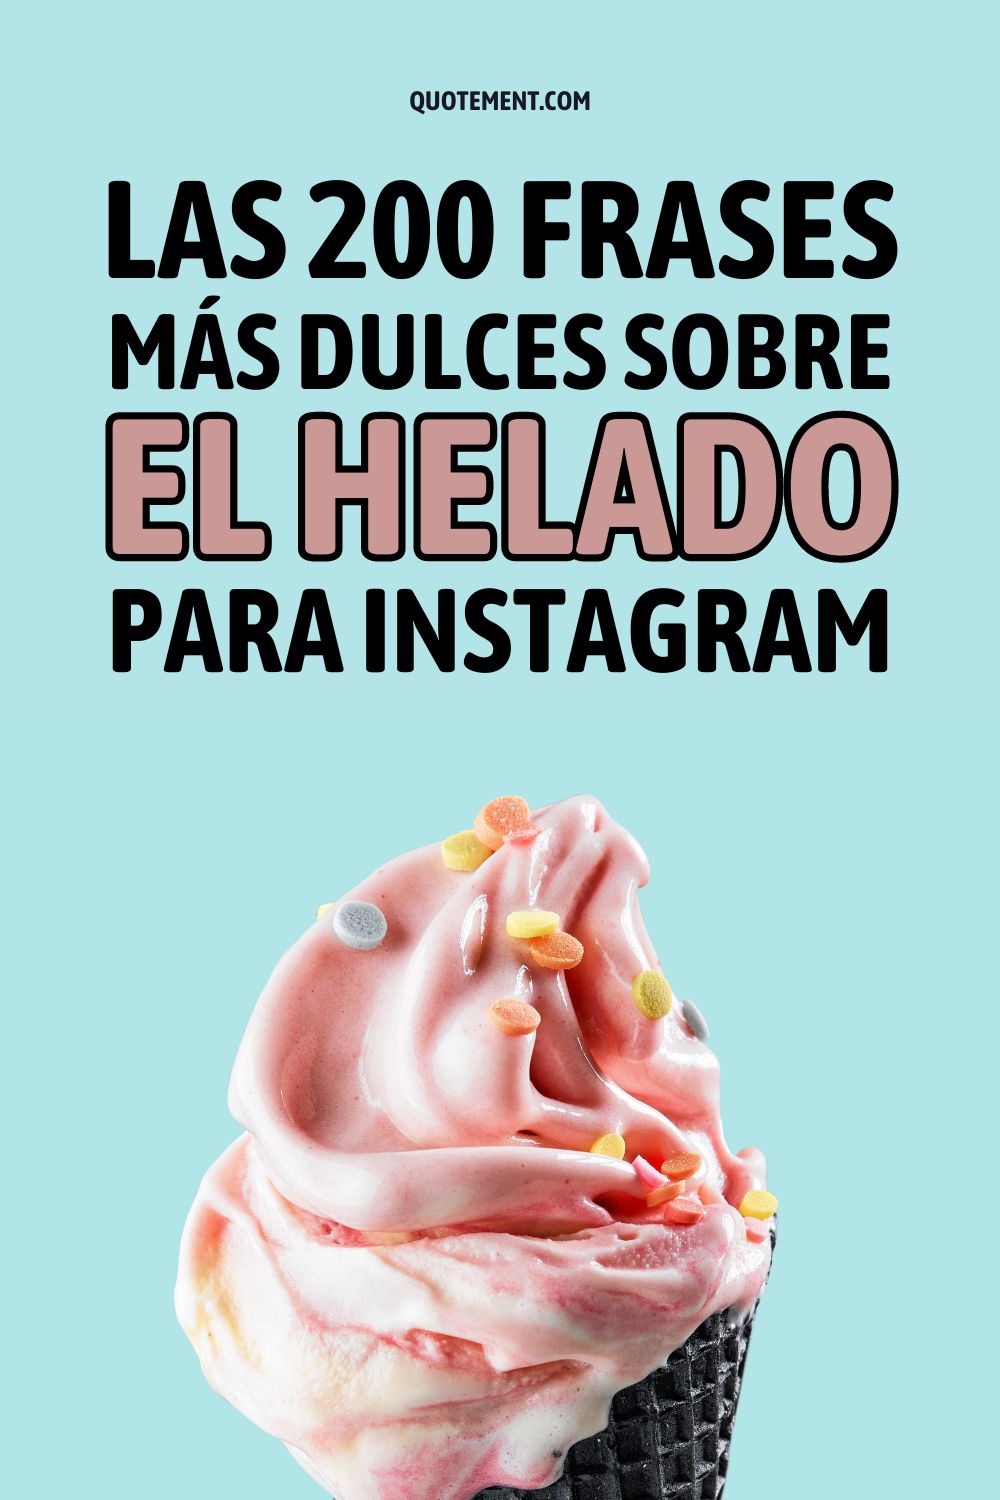 Las 200 frases más dulces sobre el helado para Instagram + pies de foto